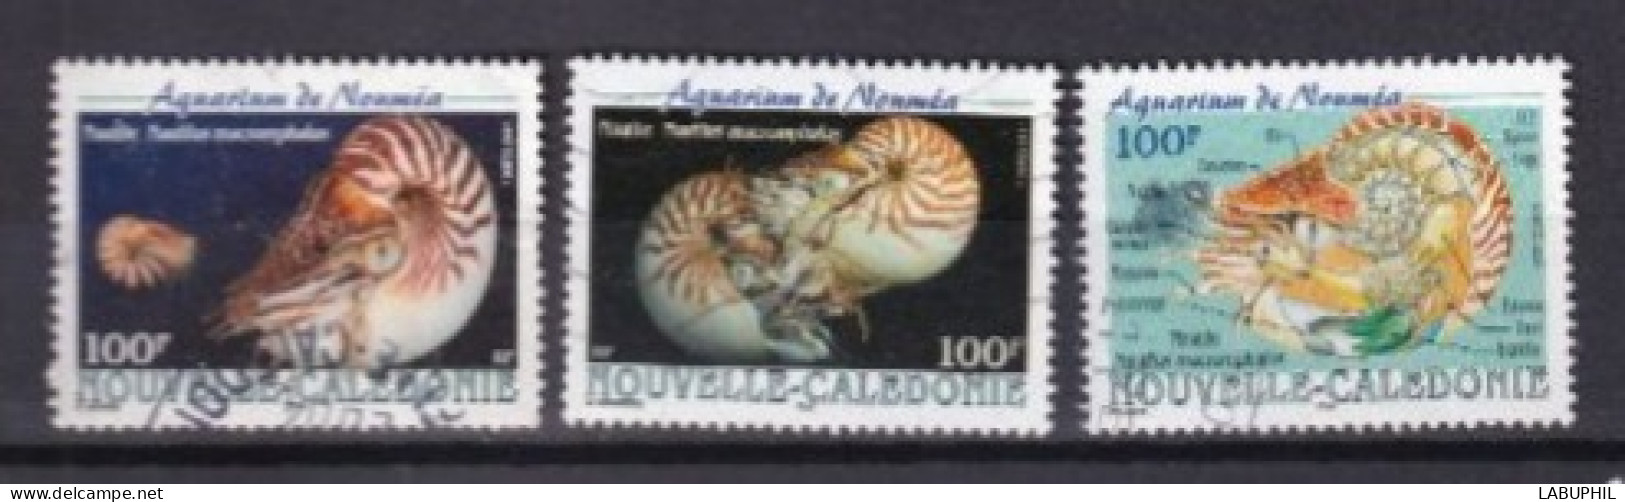 NOUVELLE CALEDONIE Dispersion D'une Collection Oblitéré Used 2001 Coquillages - Oblitérés